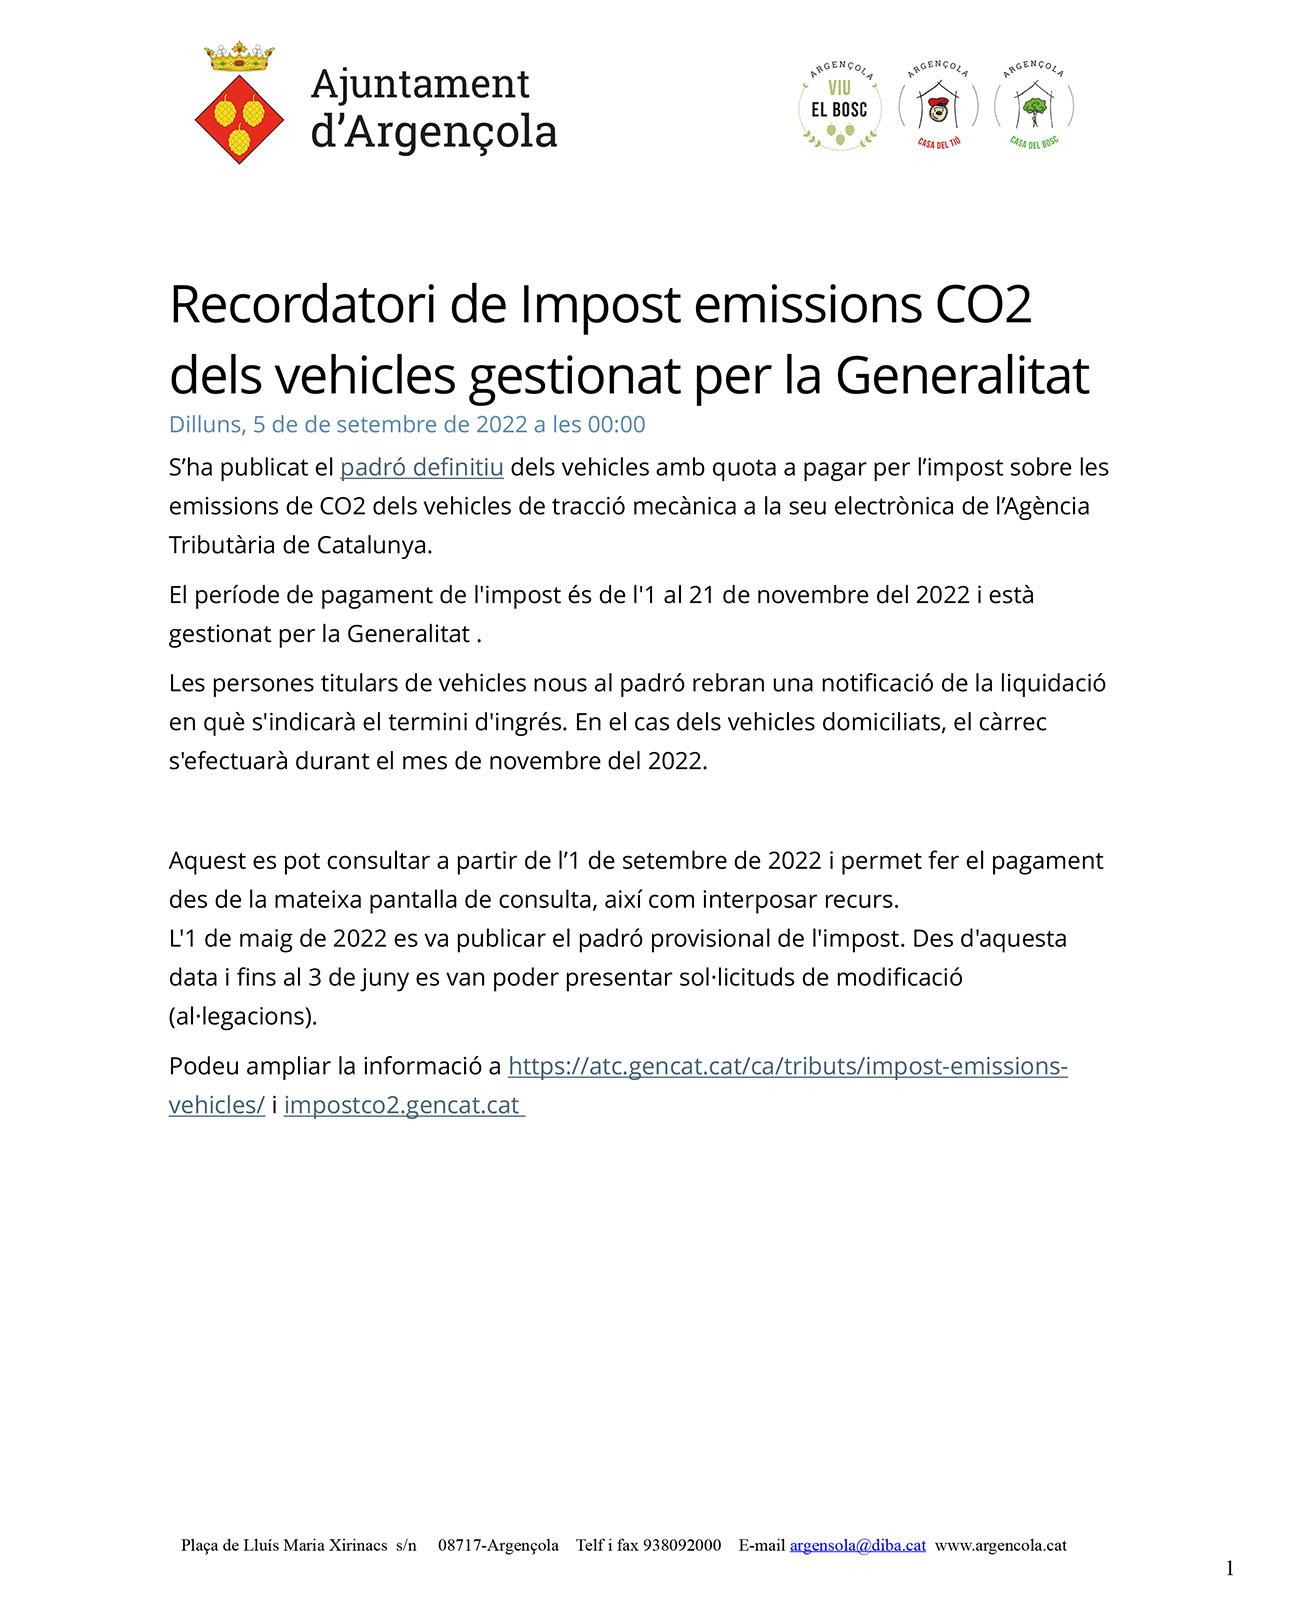 Recordatori de Impost emissions CO2 dels vehicles gestionat per la Generalitat